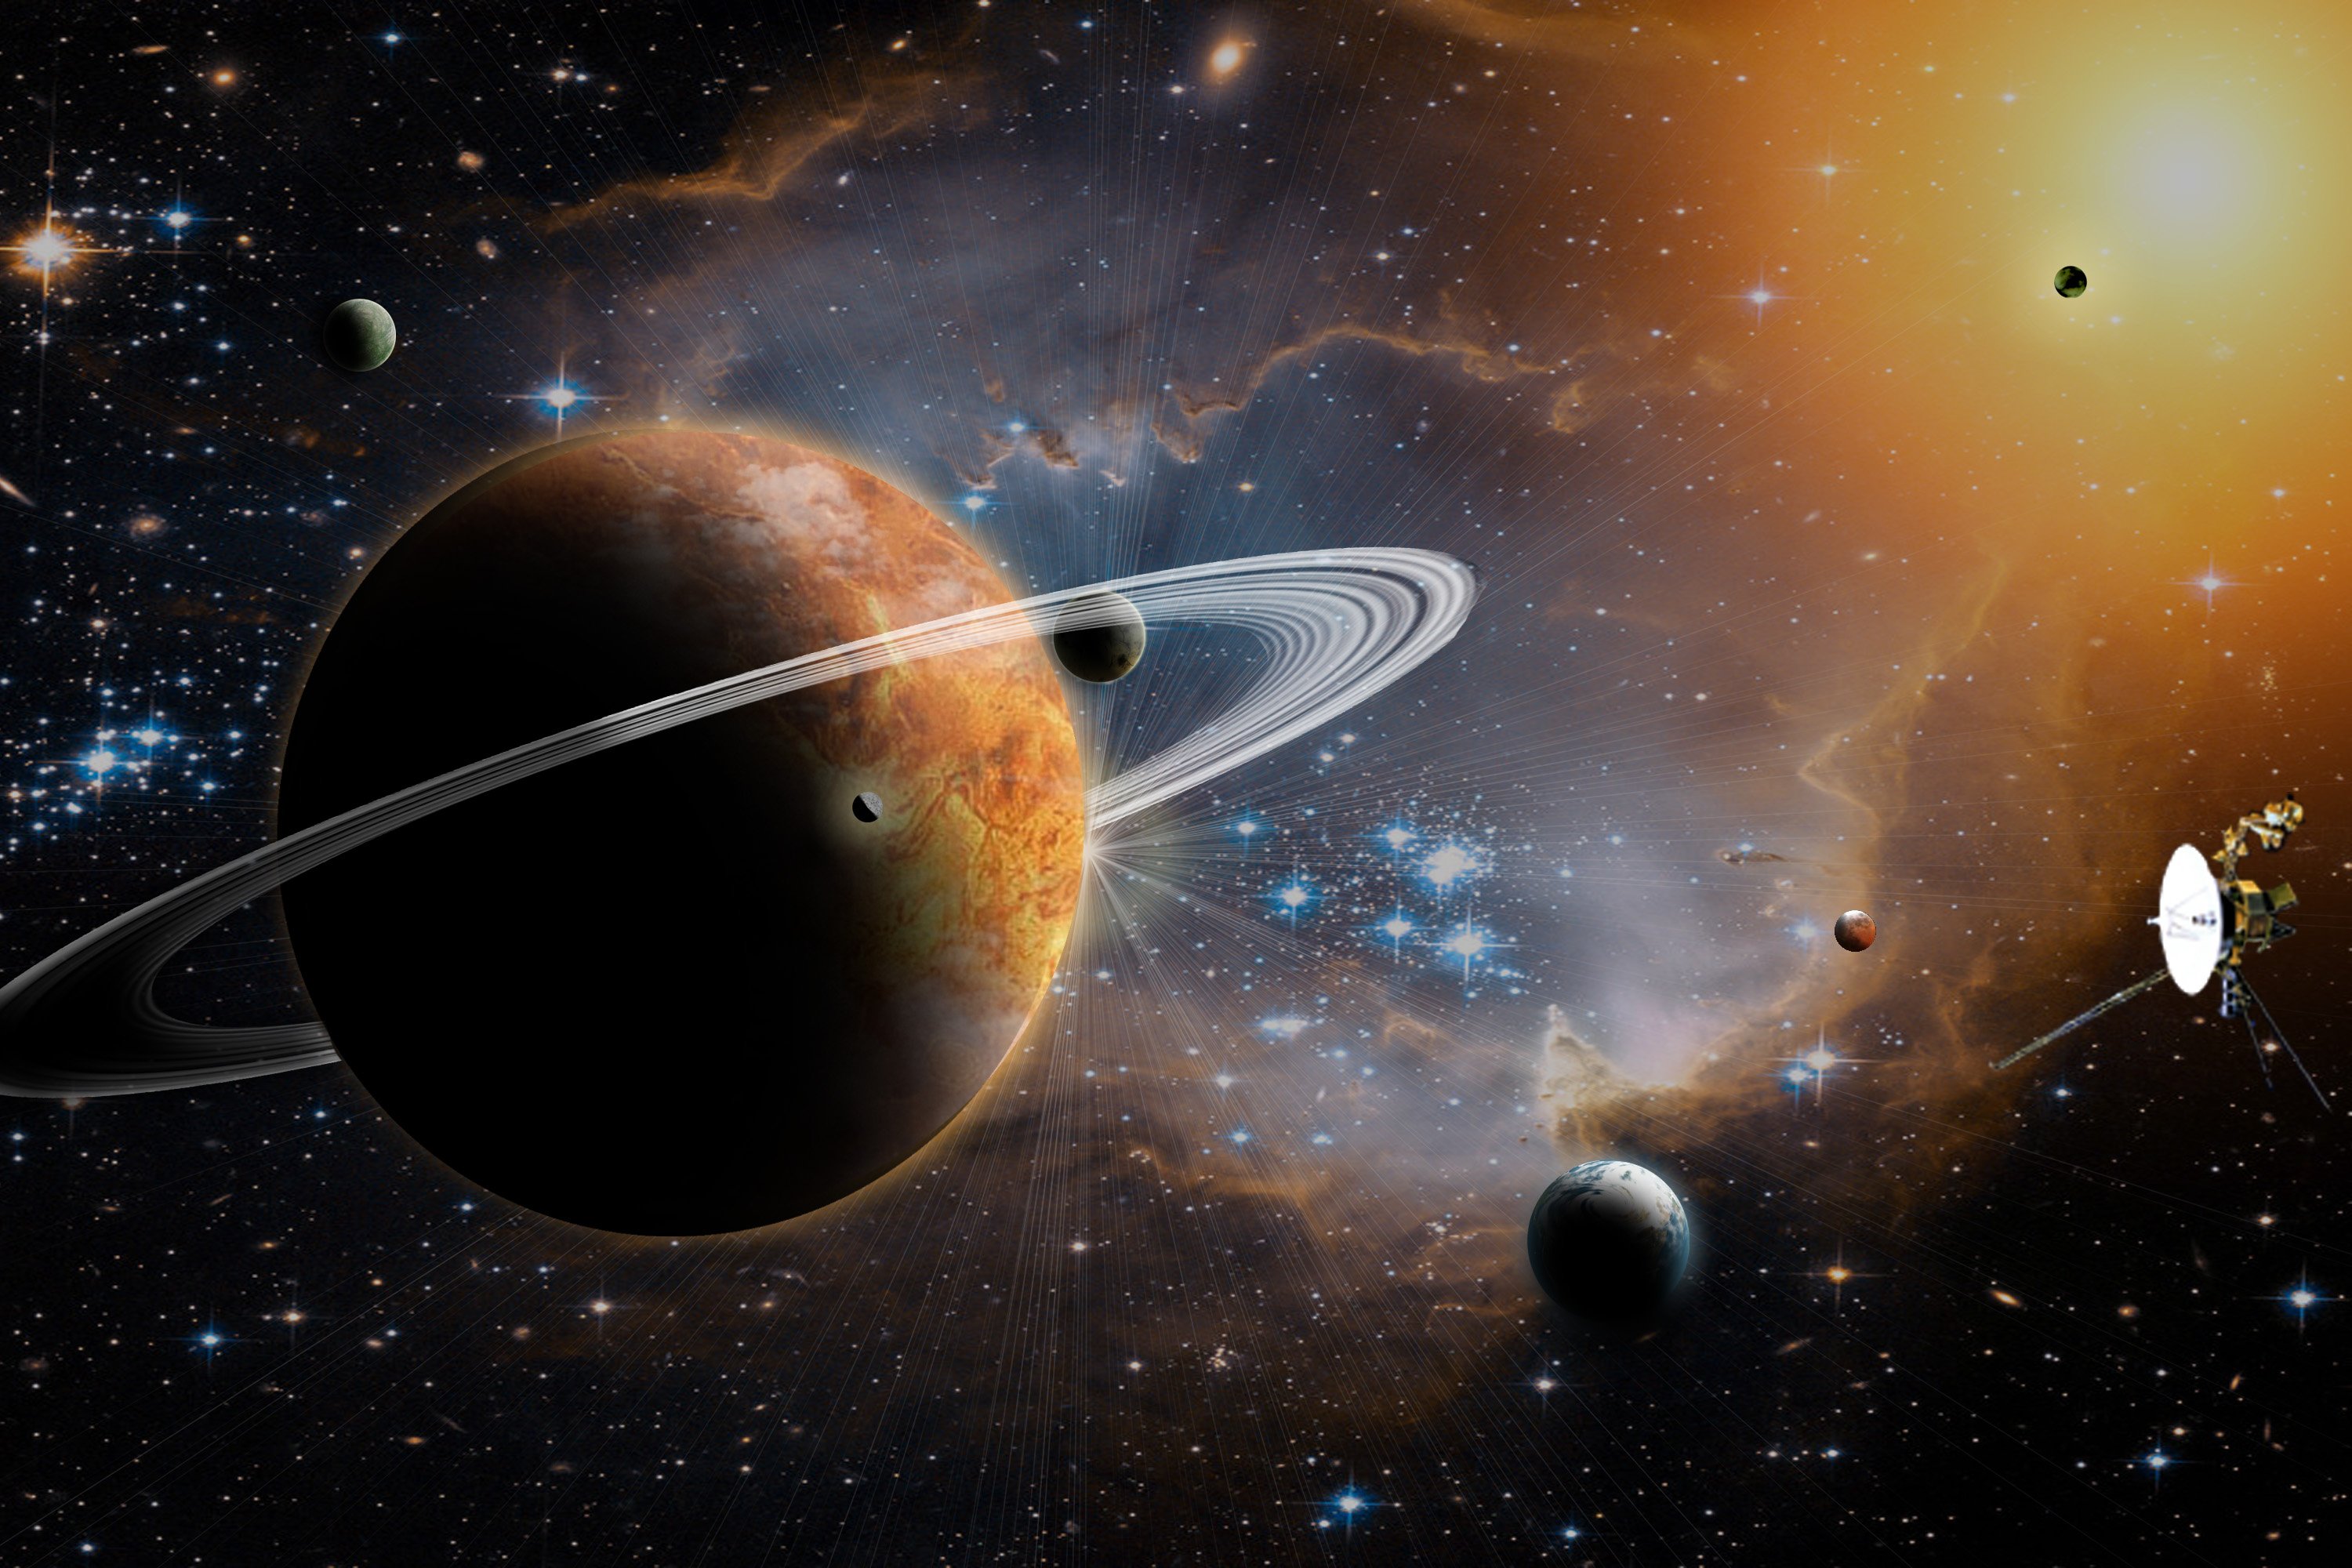 Небо планеты солнечной системы. Космос планеты. Планета с кольцами. Изображение космоса и планет. Картинки про космос и планеты.